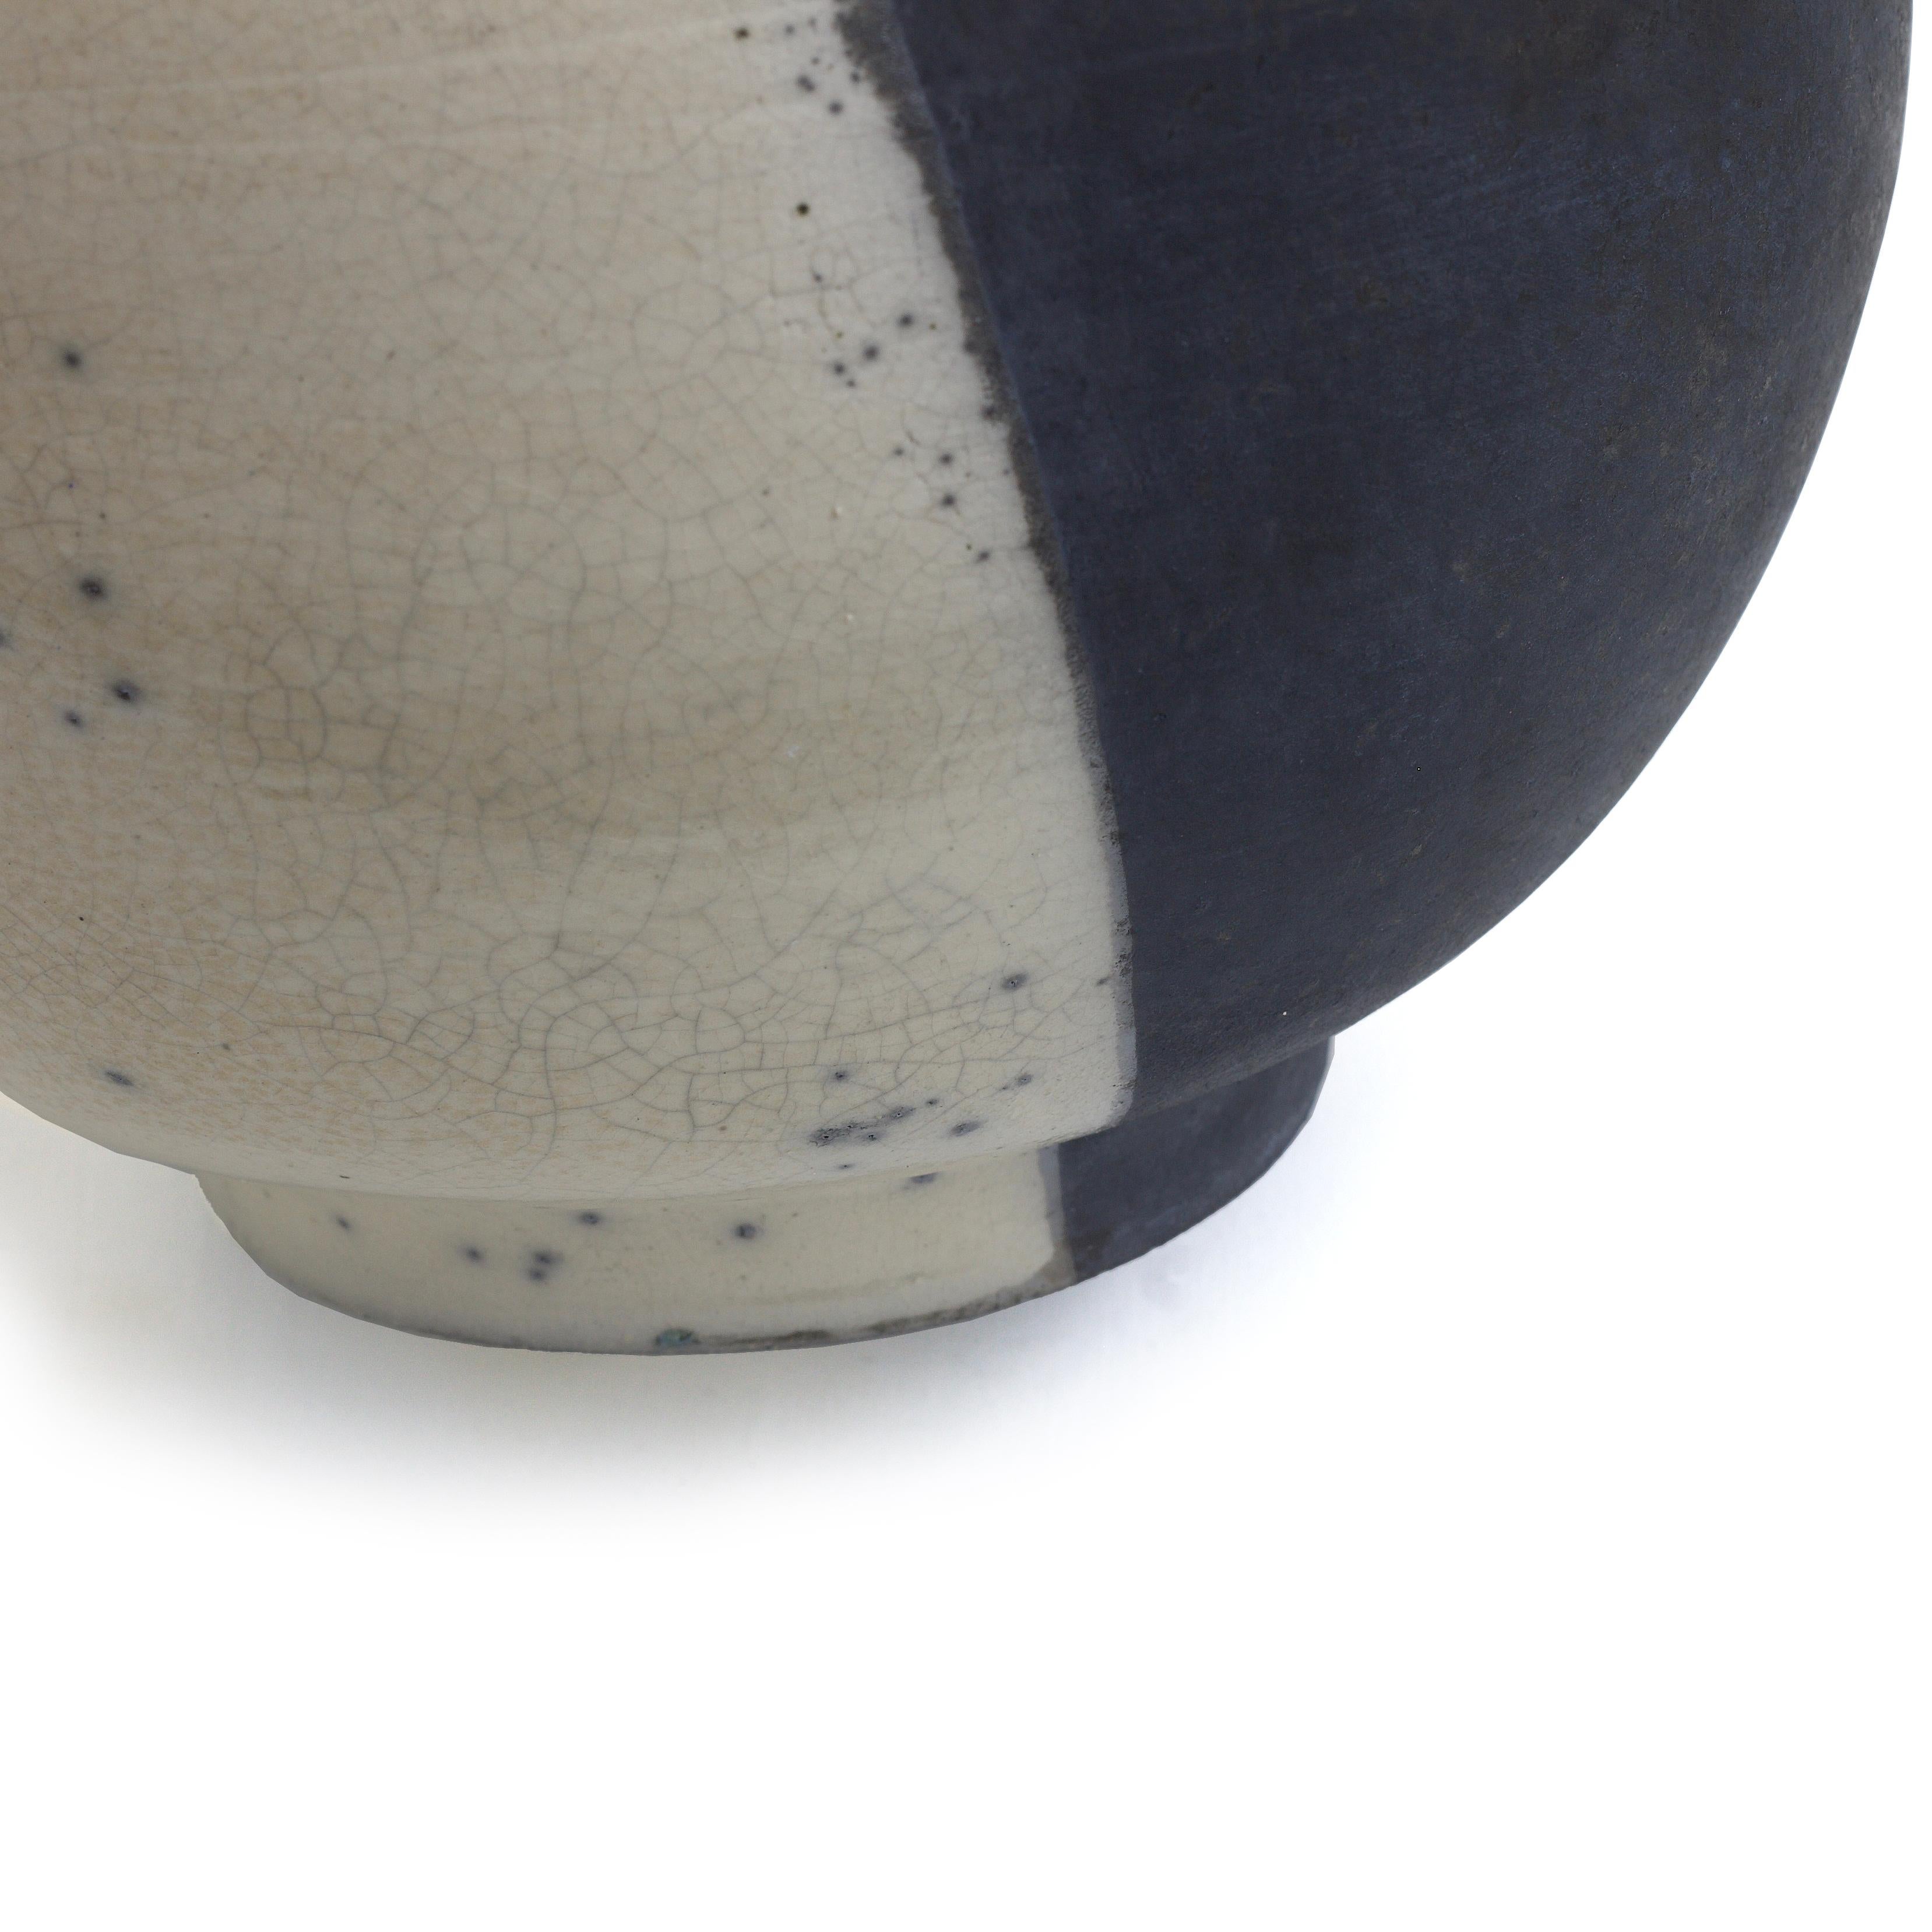 Japanese Modern Minimalist LAAB Shadow Sculpture Raku Ceramic White Black Vase For Sale 2